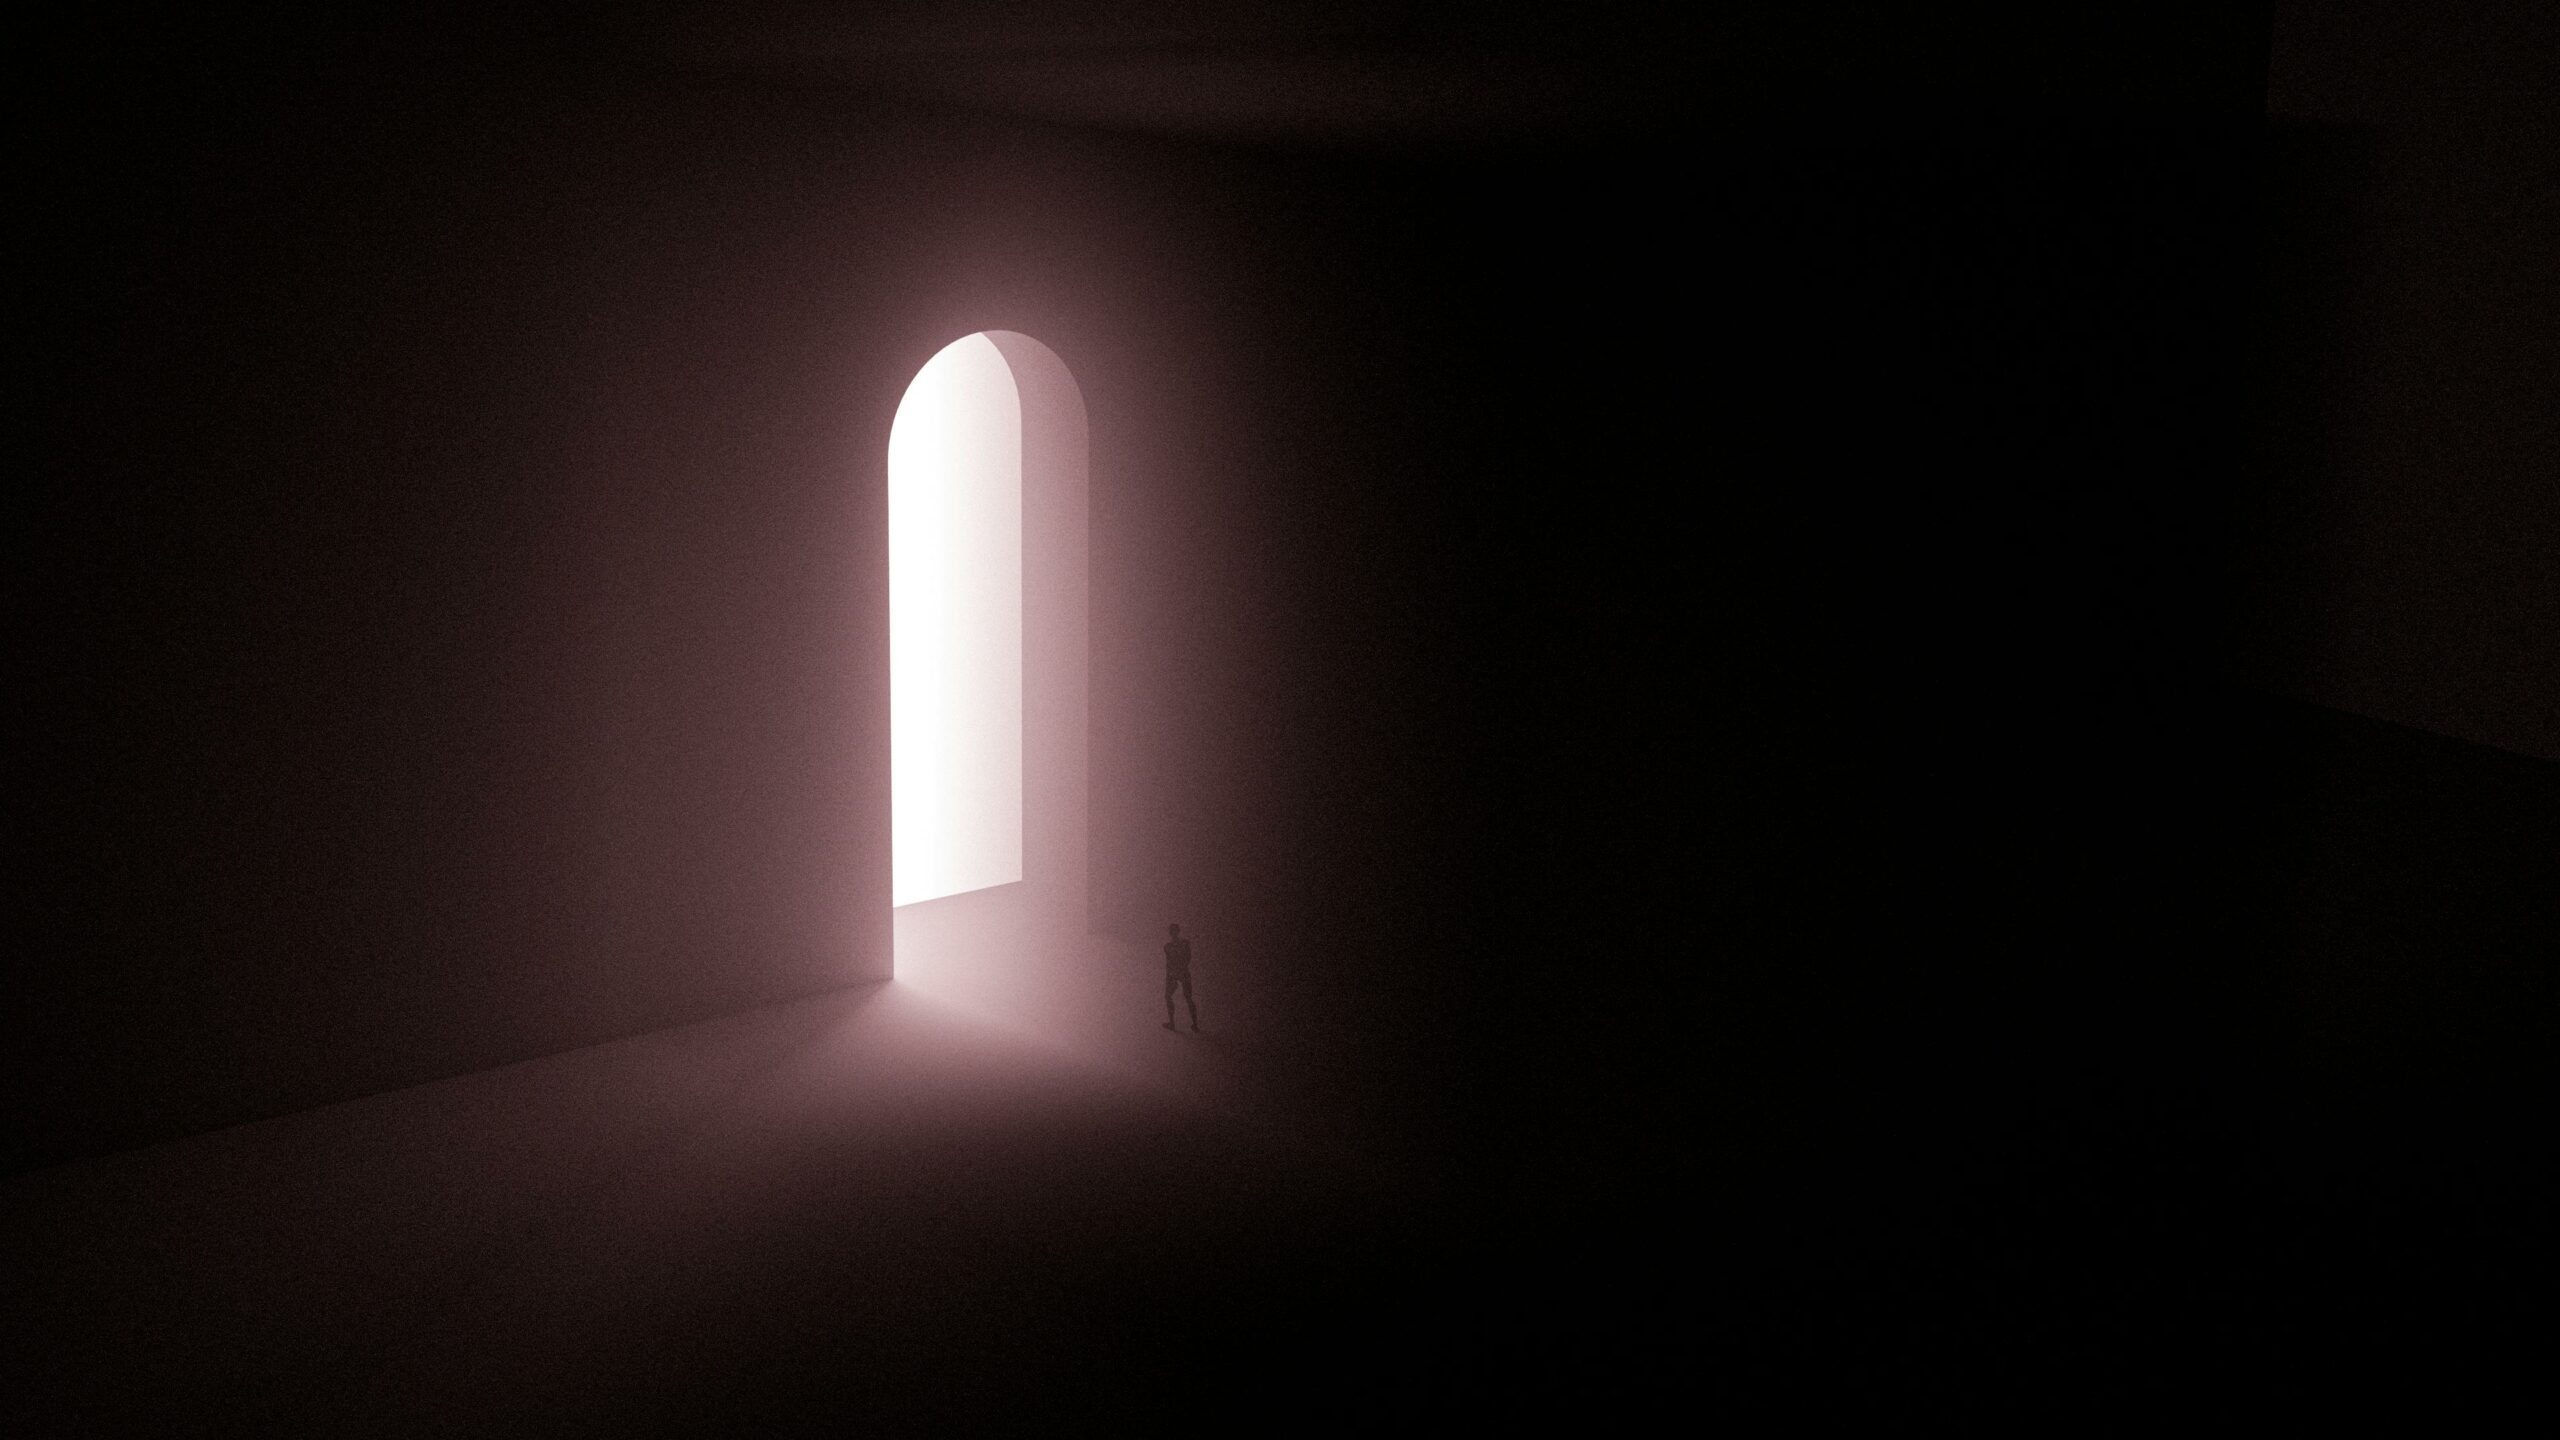 Ilustración digital que muestra una puerta grande que da entrada a una habitación blanca, y una persona entrando en ella.